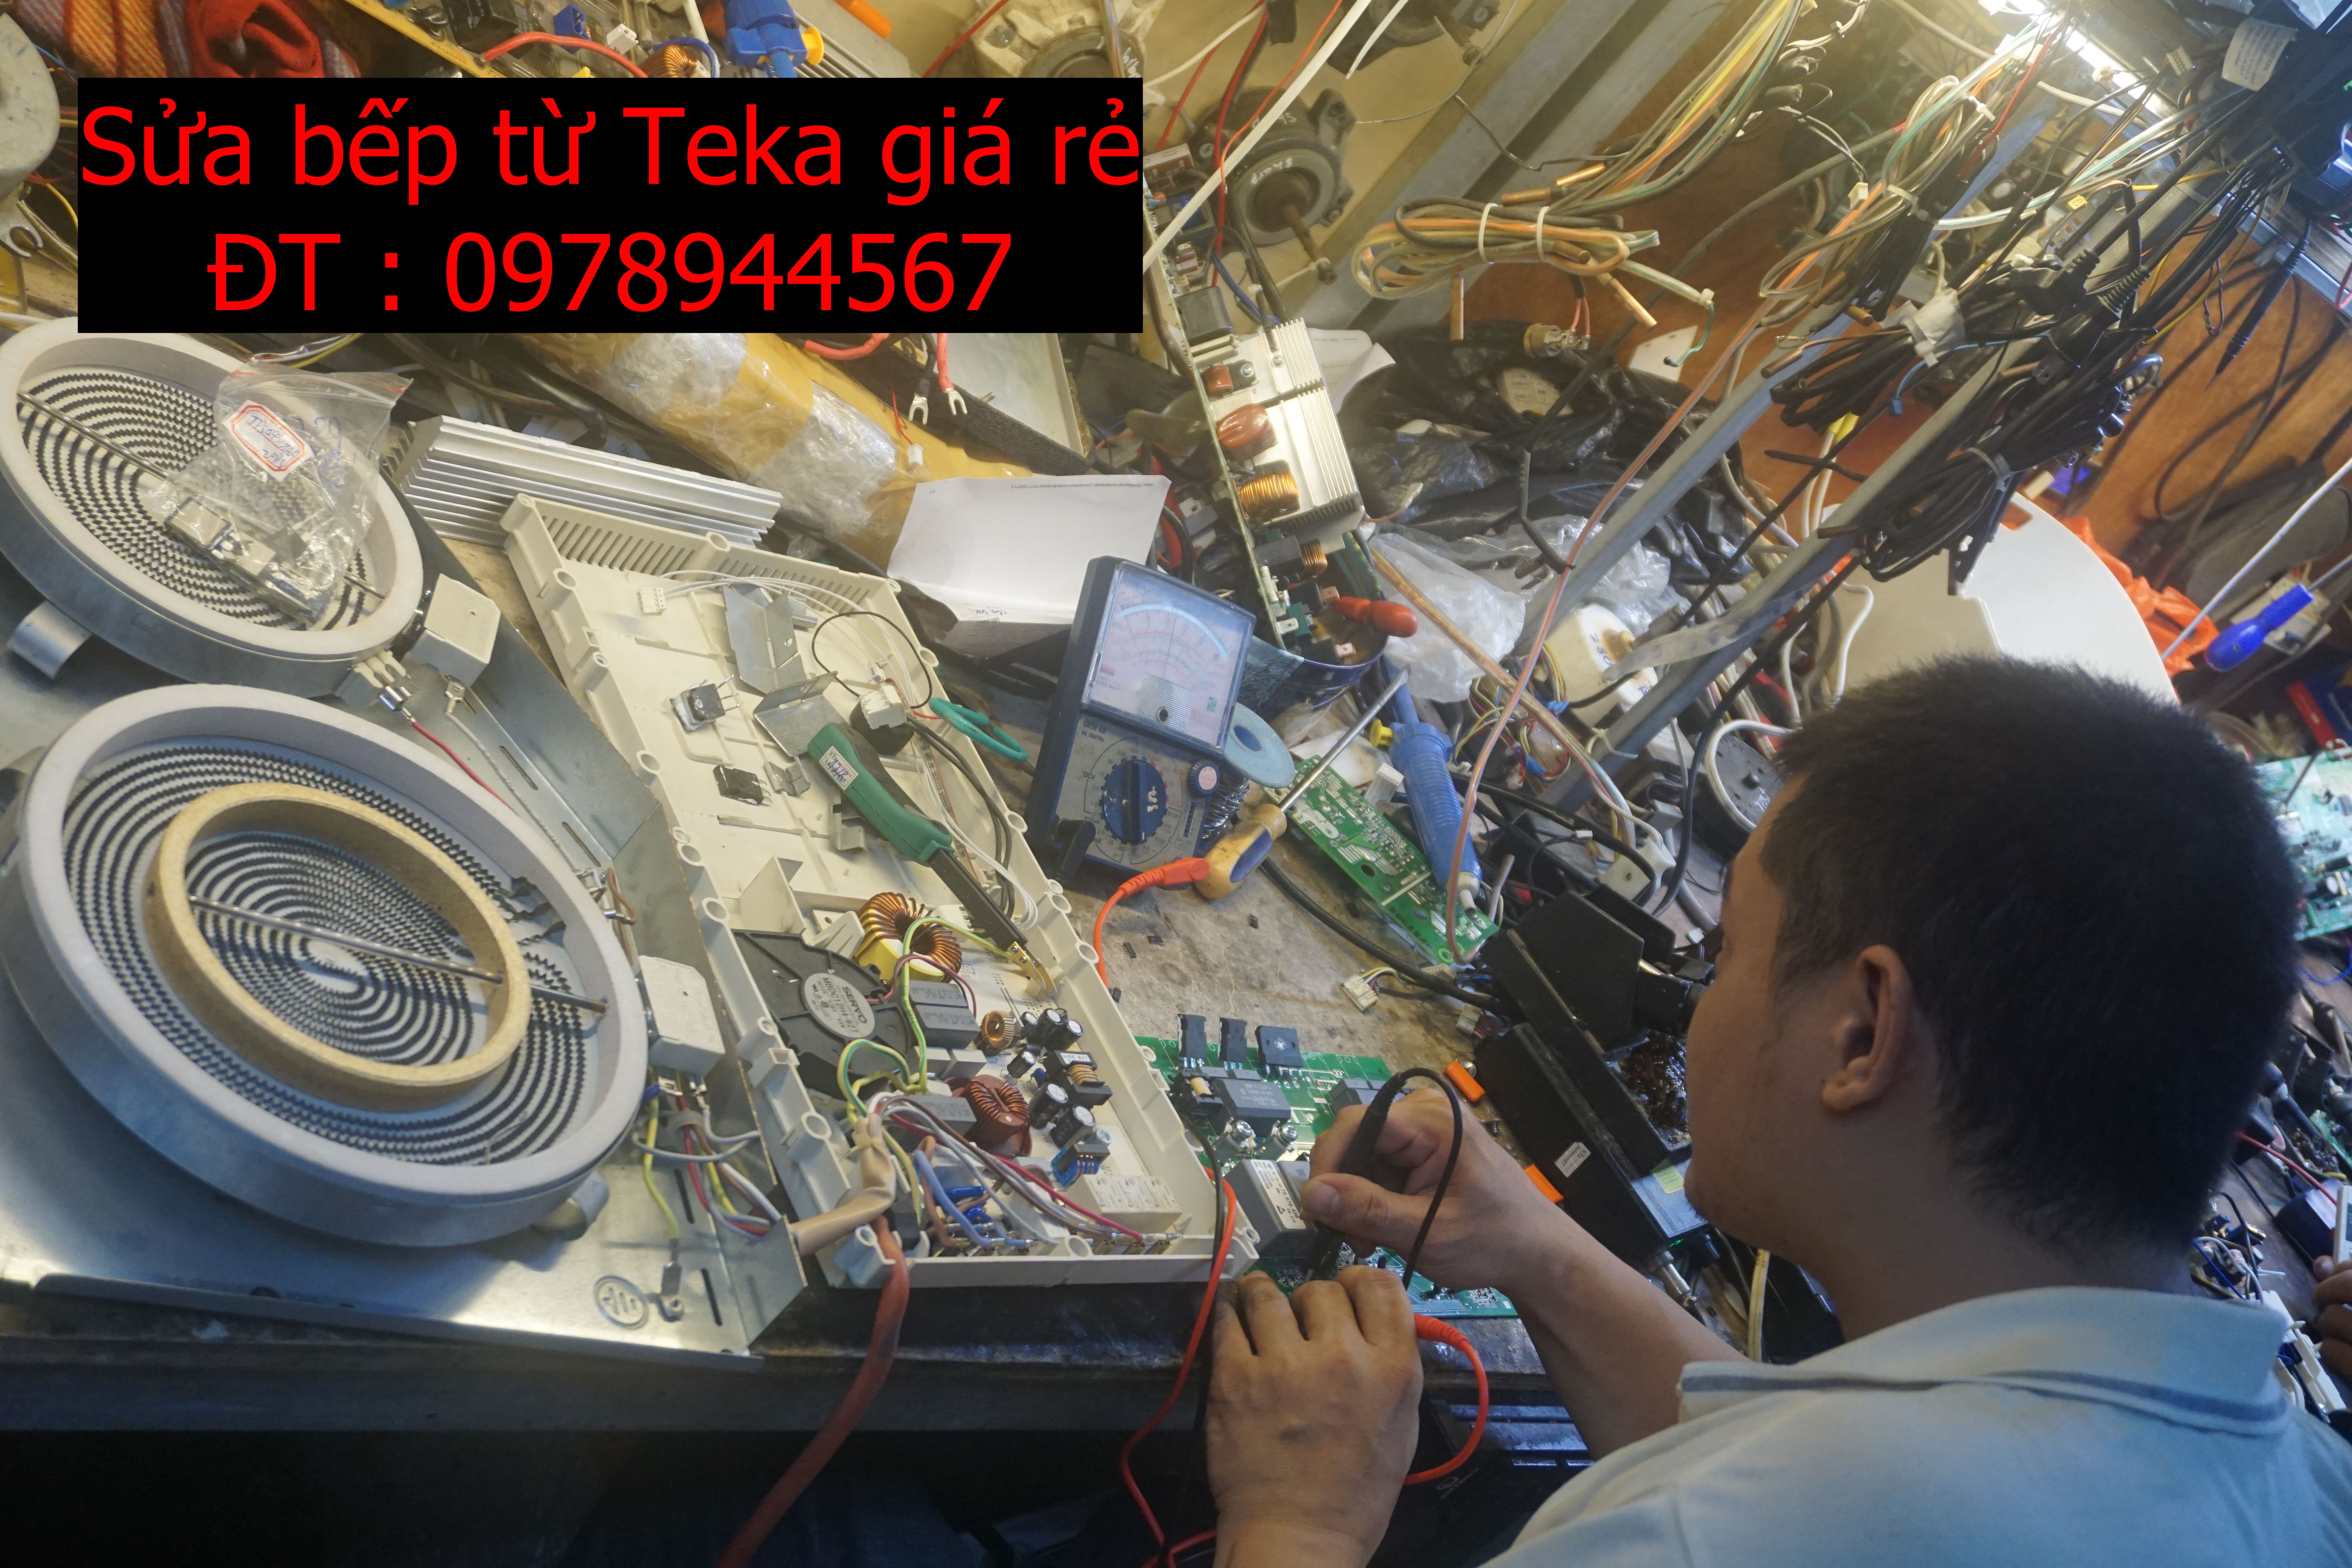 Sửa mạch bếp điện từ Teka